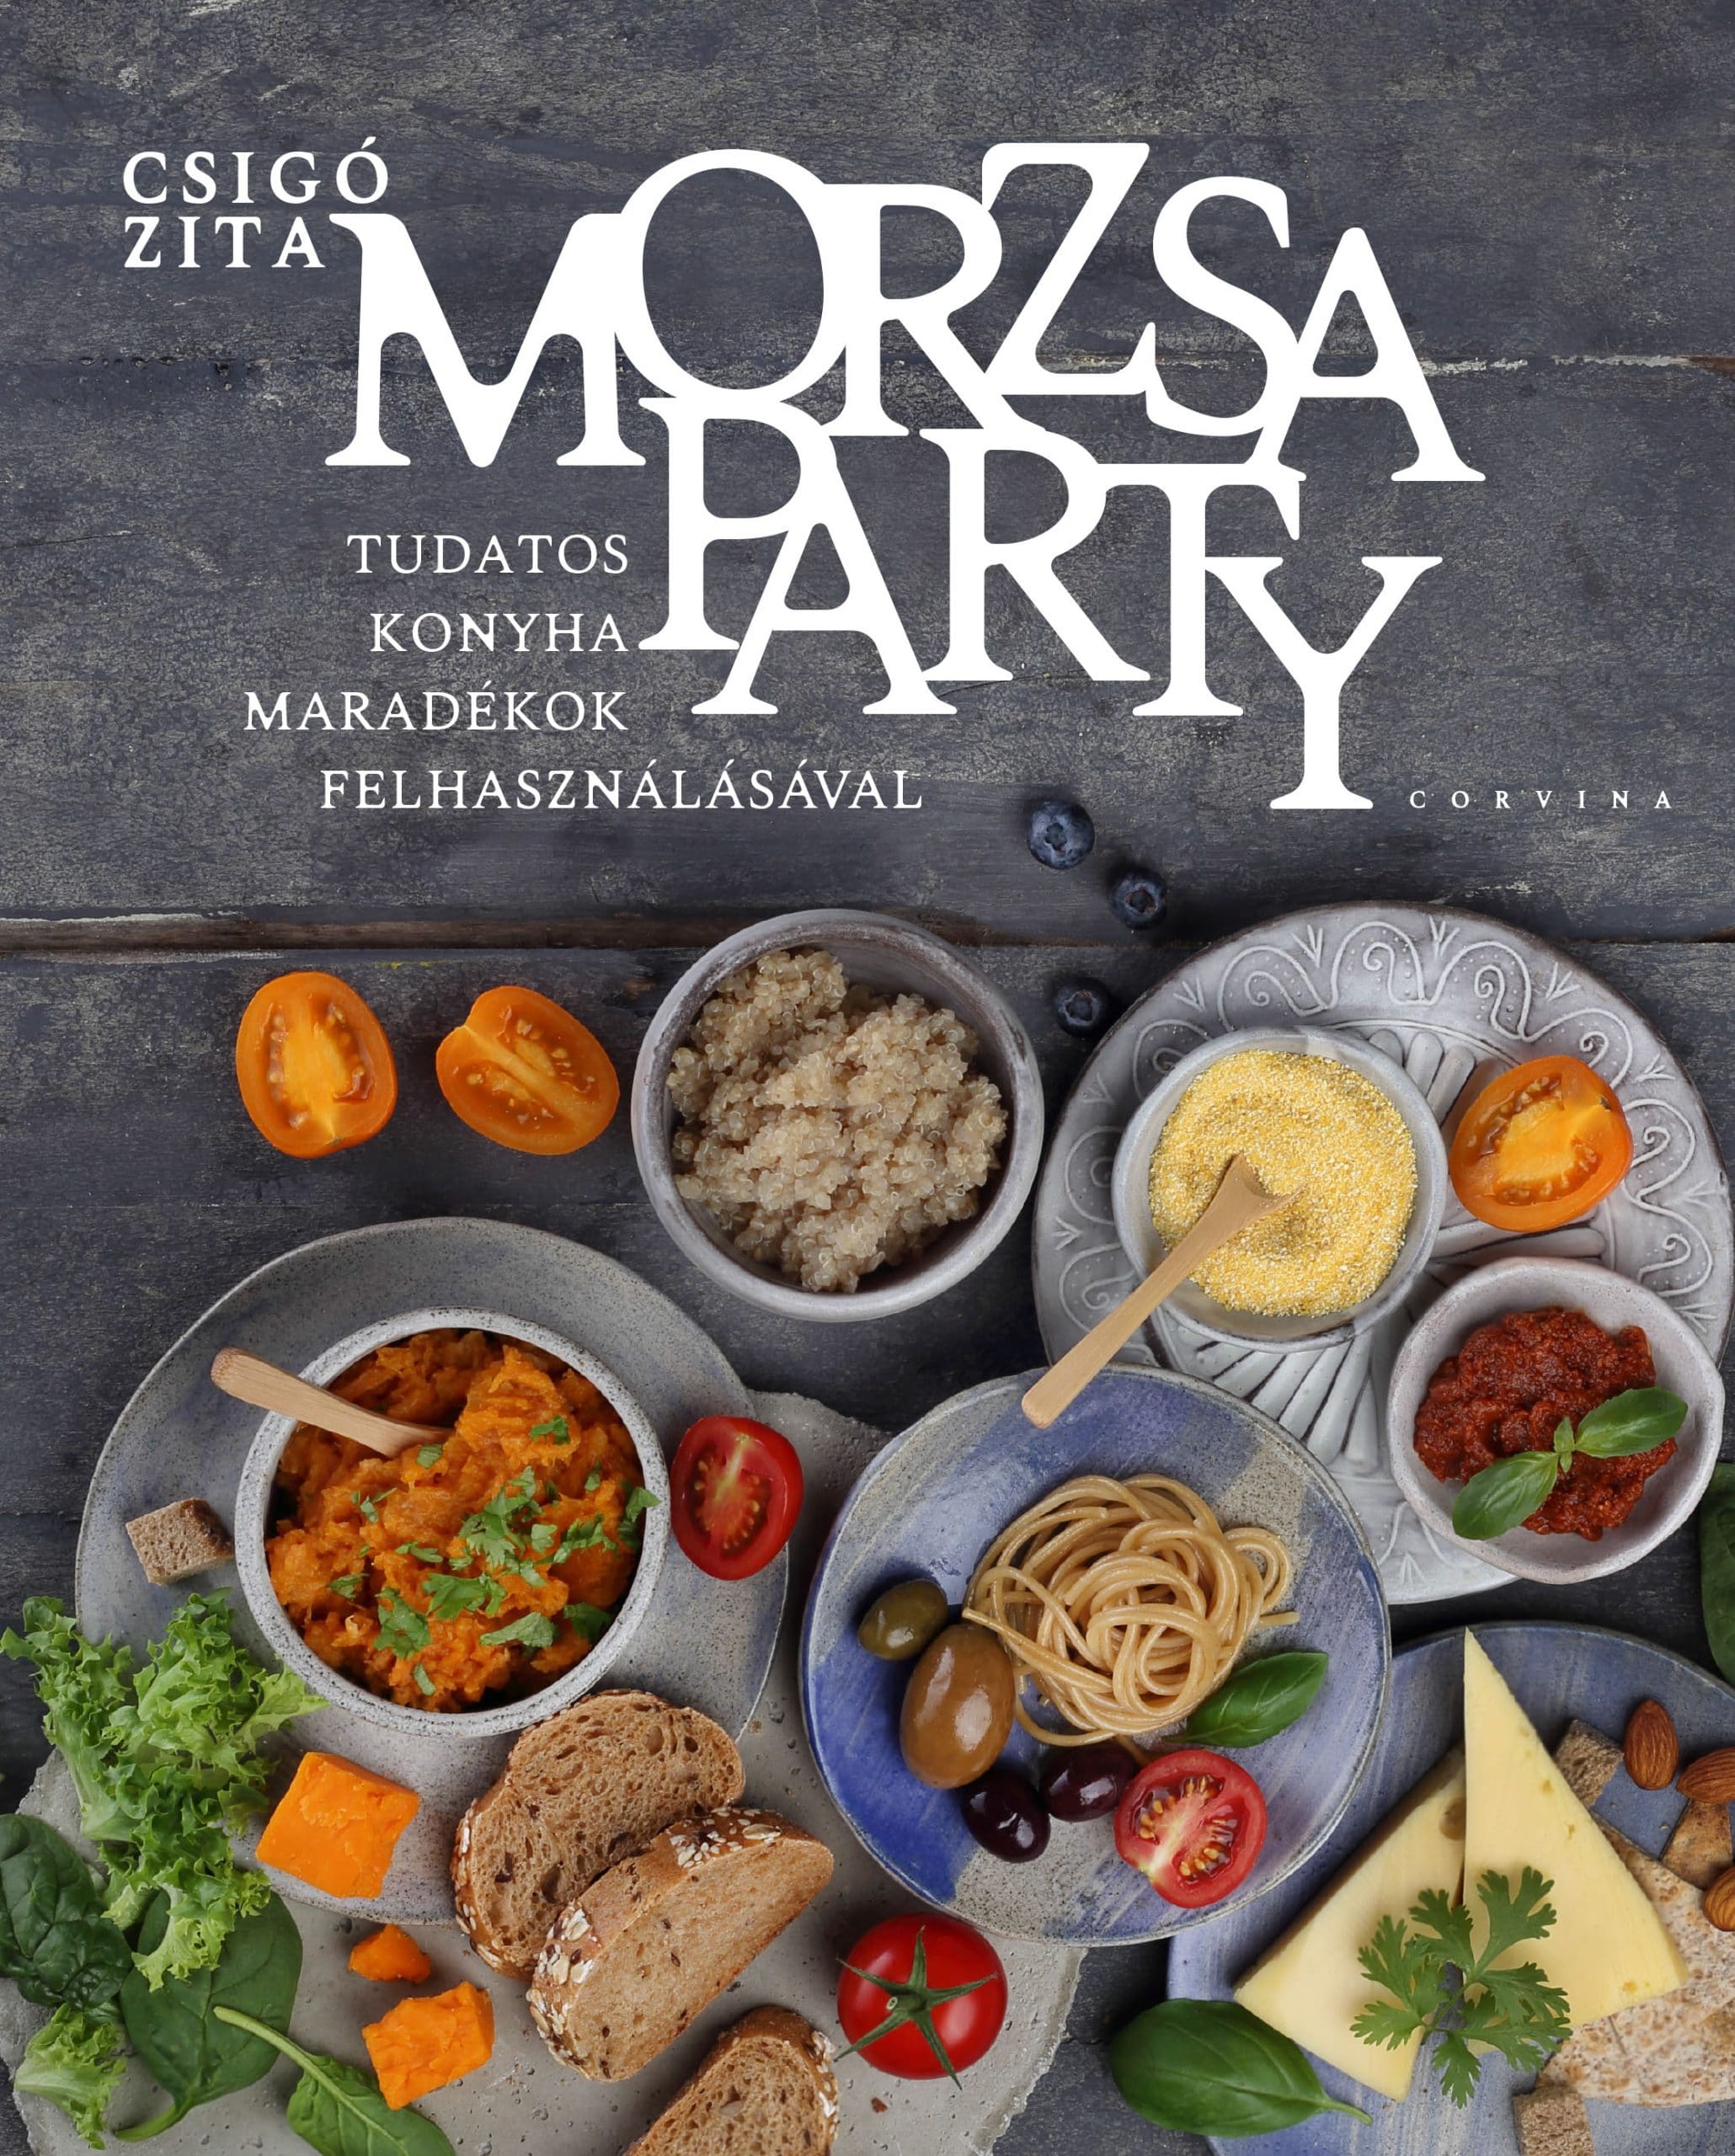 Könyvklub – Morzsa party